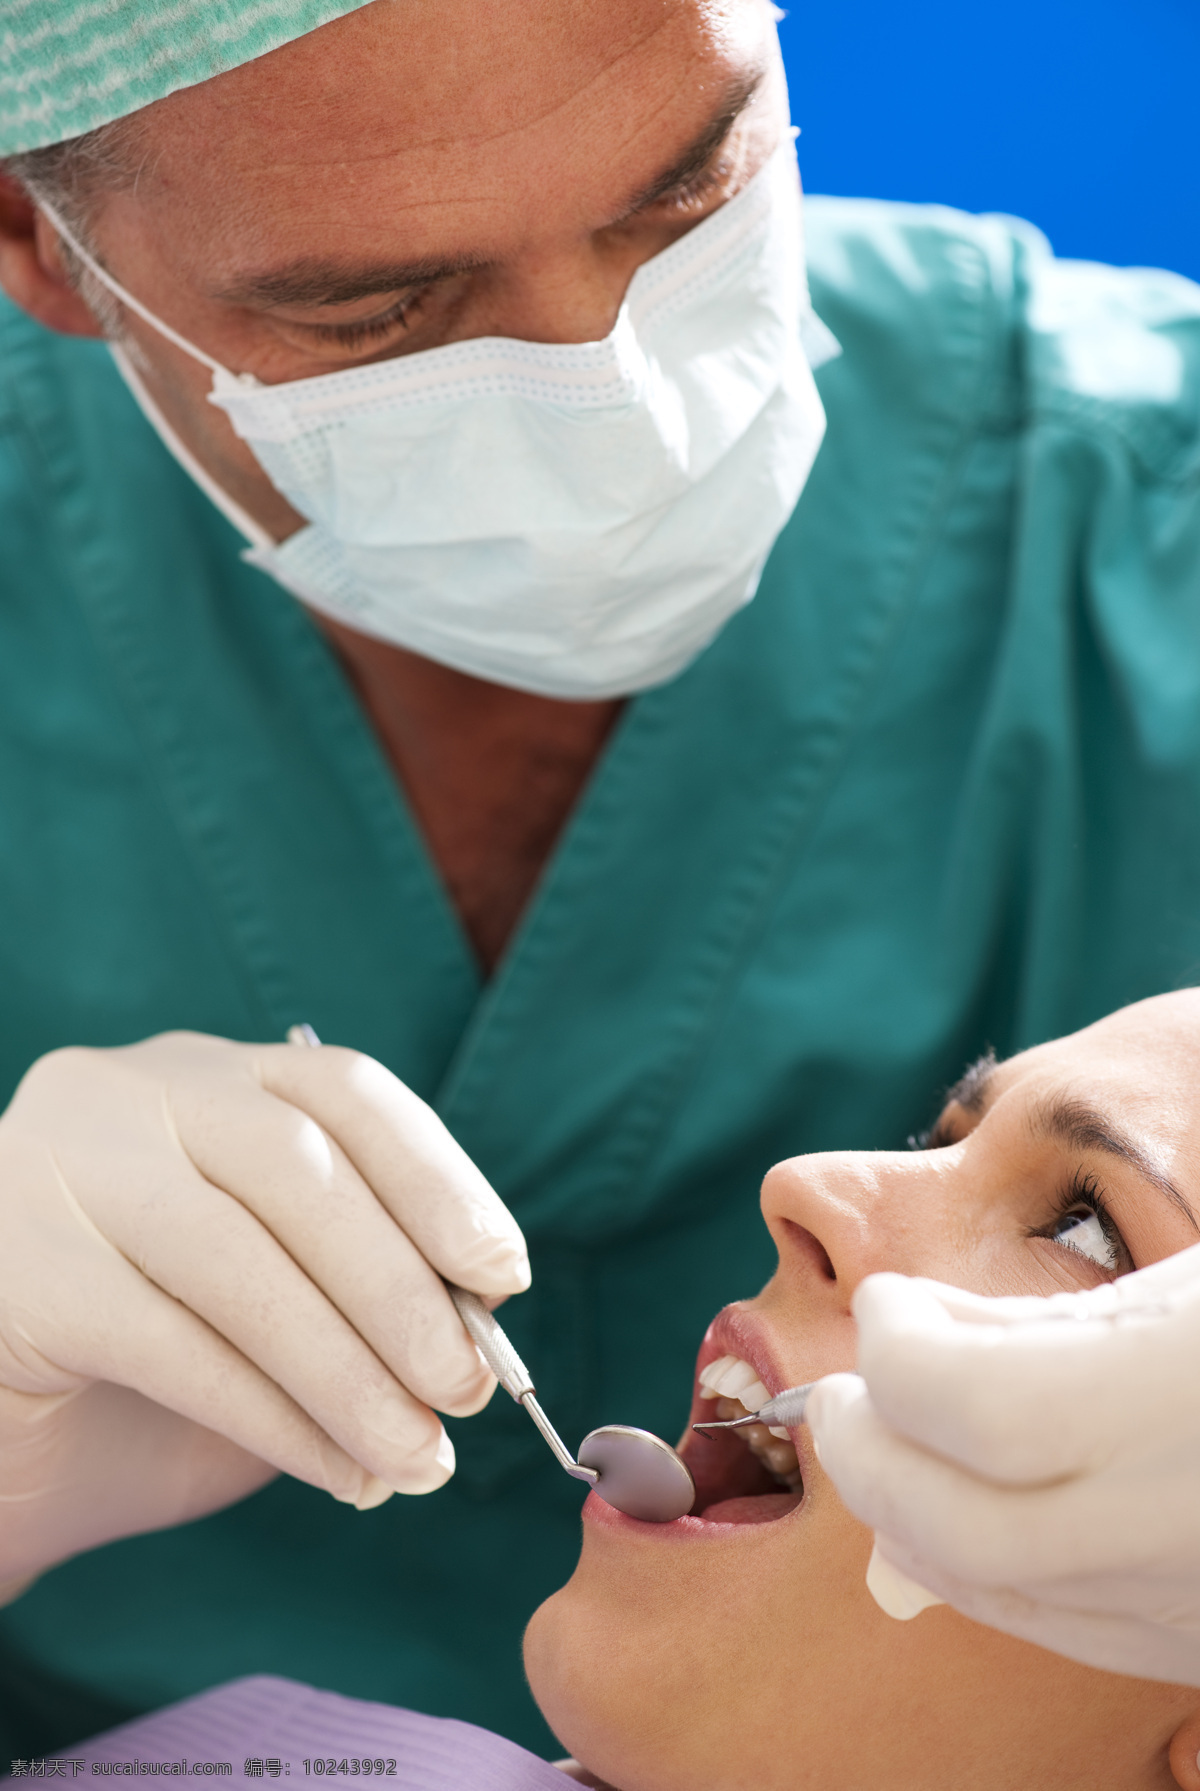 牙科 图 医生 医院 模板下载 背景图片 口腔牙科图片 牙 牙医 高清牙科图片 牙科jpg图 医疗护理 现代科技